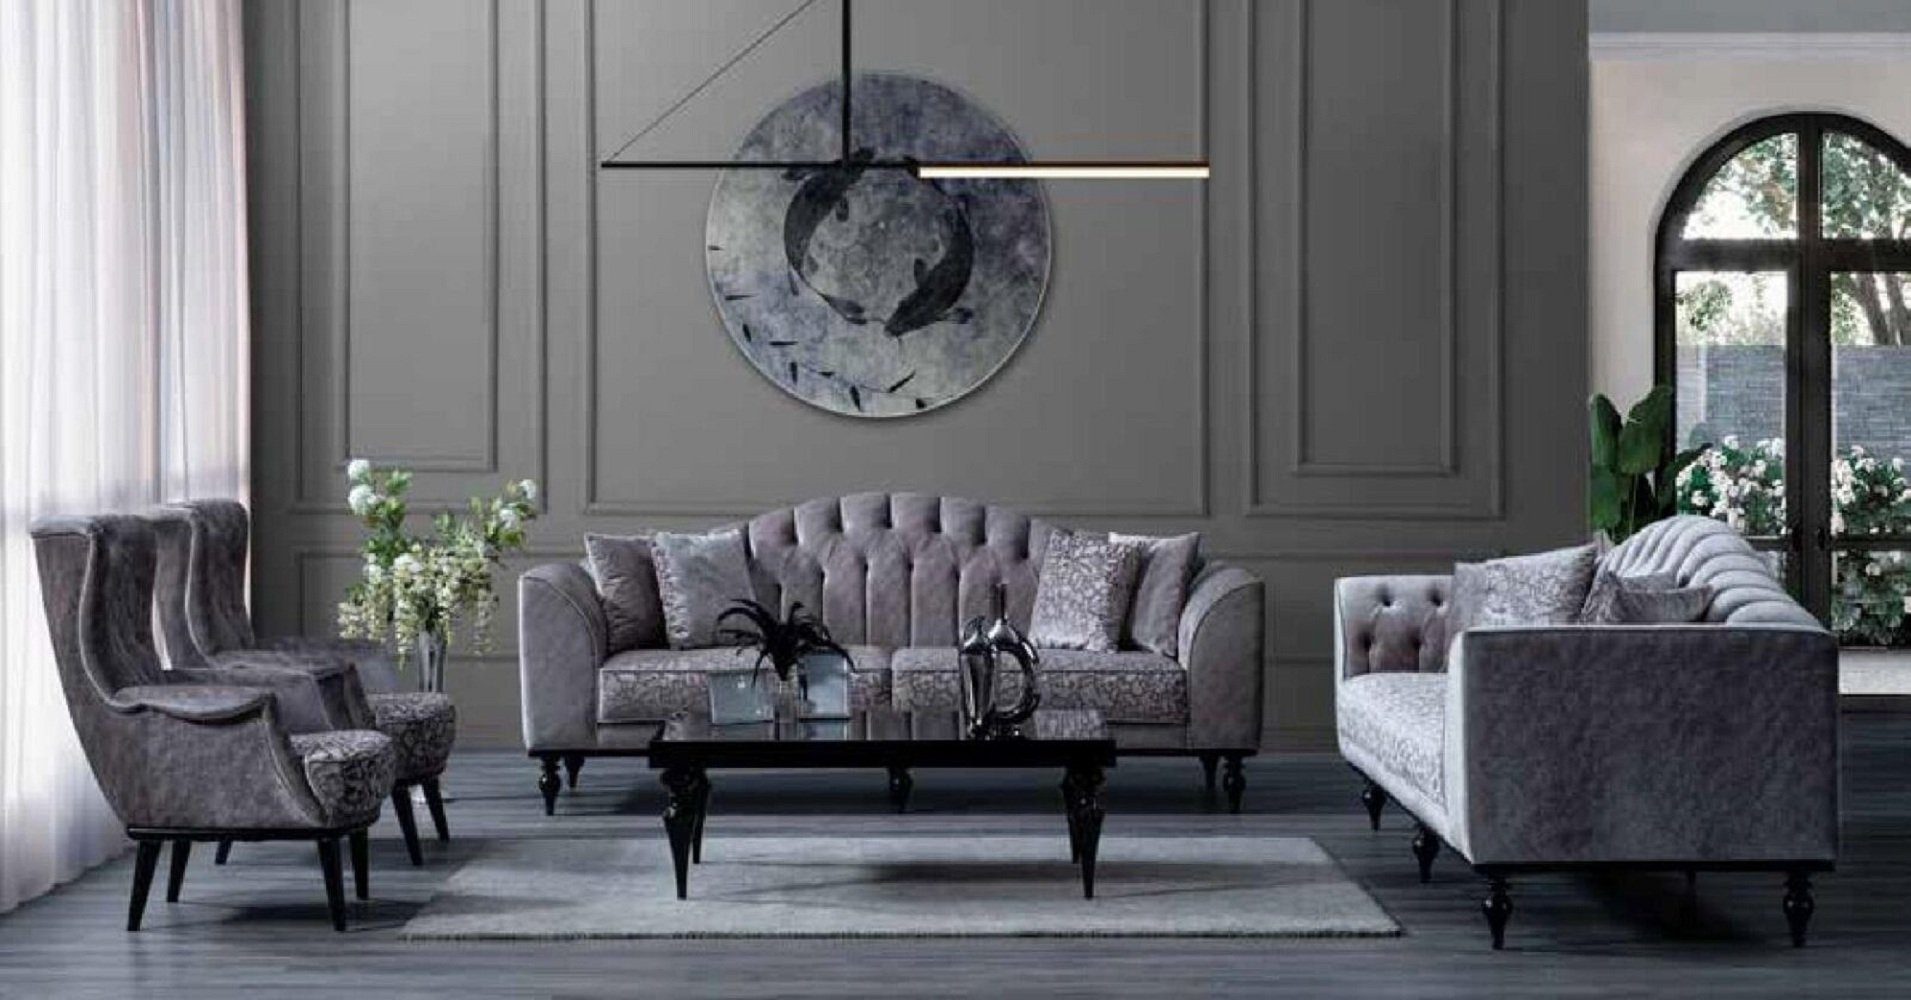 JVmoebel 3-Sitzer Dreisitzer Luxus 1 Textil Wohnzimmer Made Grau in Sofa Holz, Moderne Europe Sofa Couch Teile